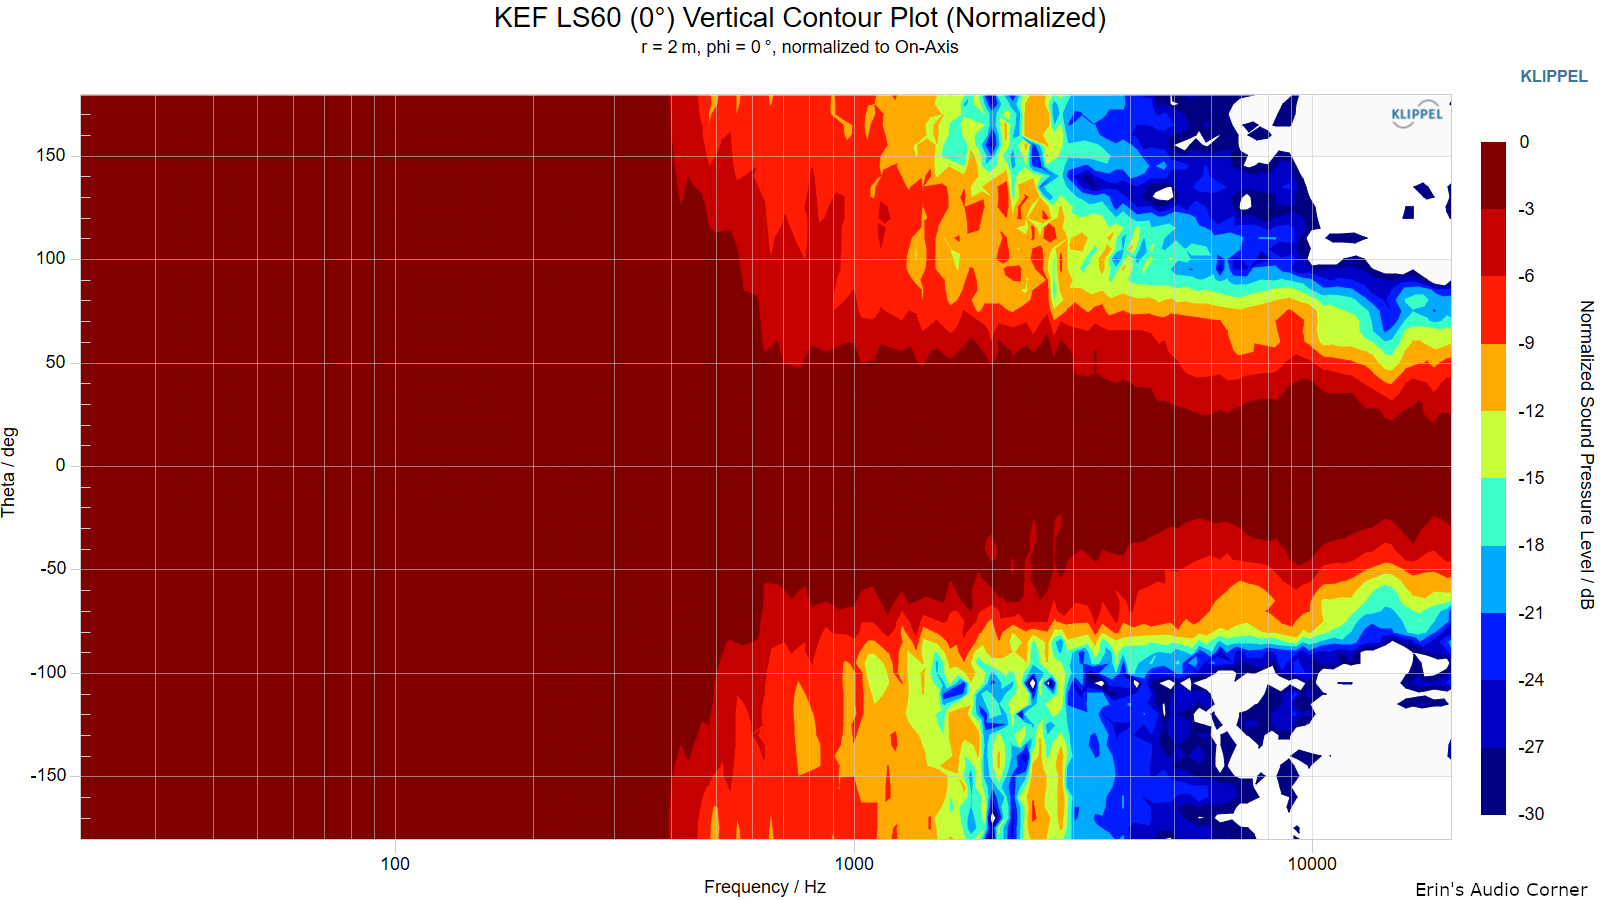 KEF-LS60-0-Vertical-Contour-Plot-Normalized.png